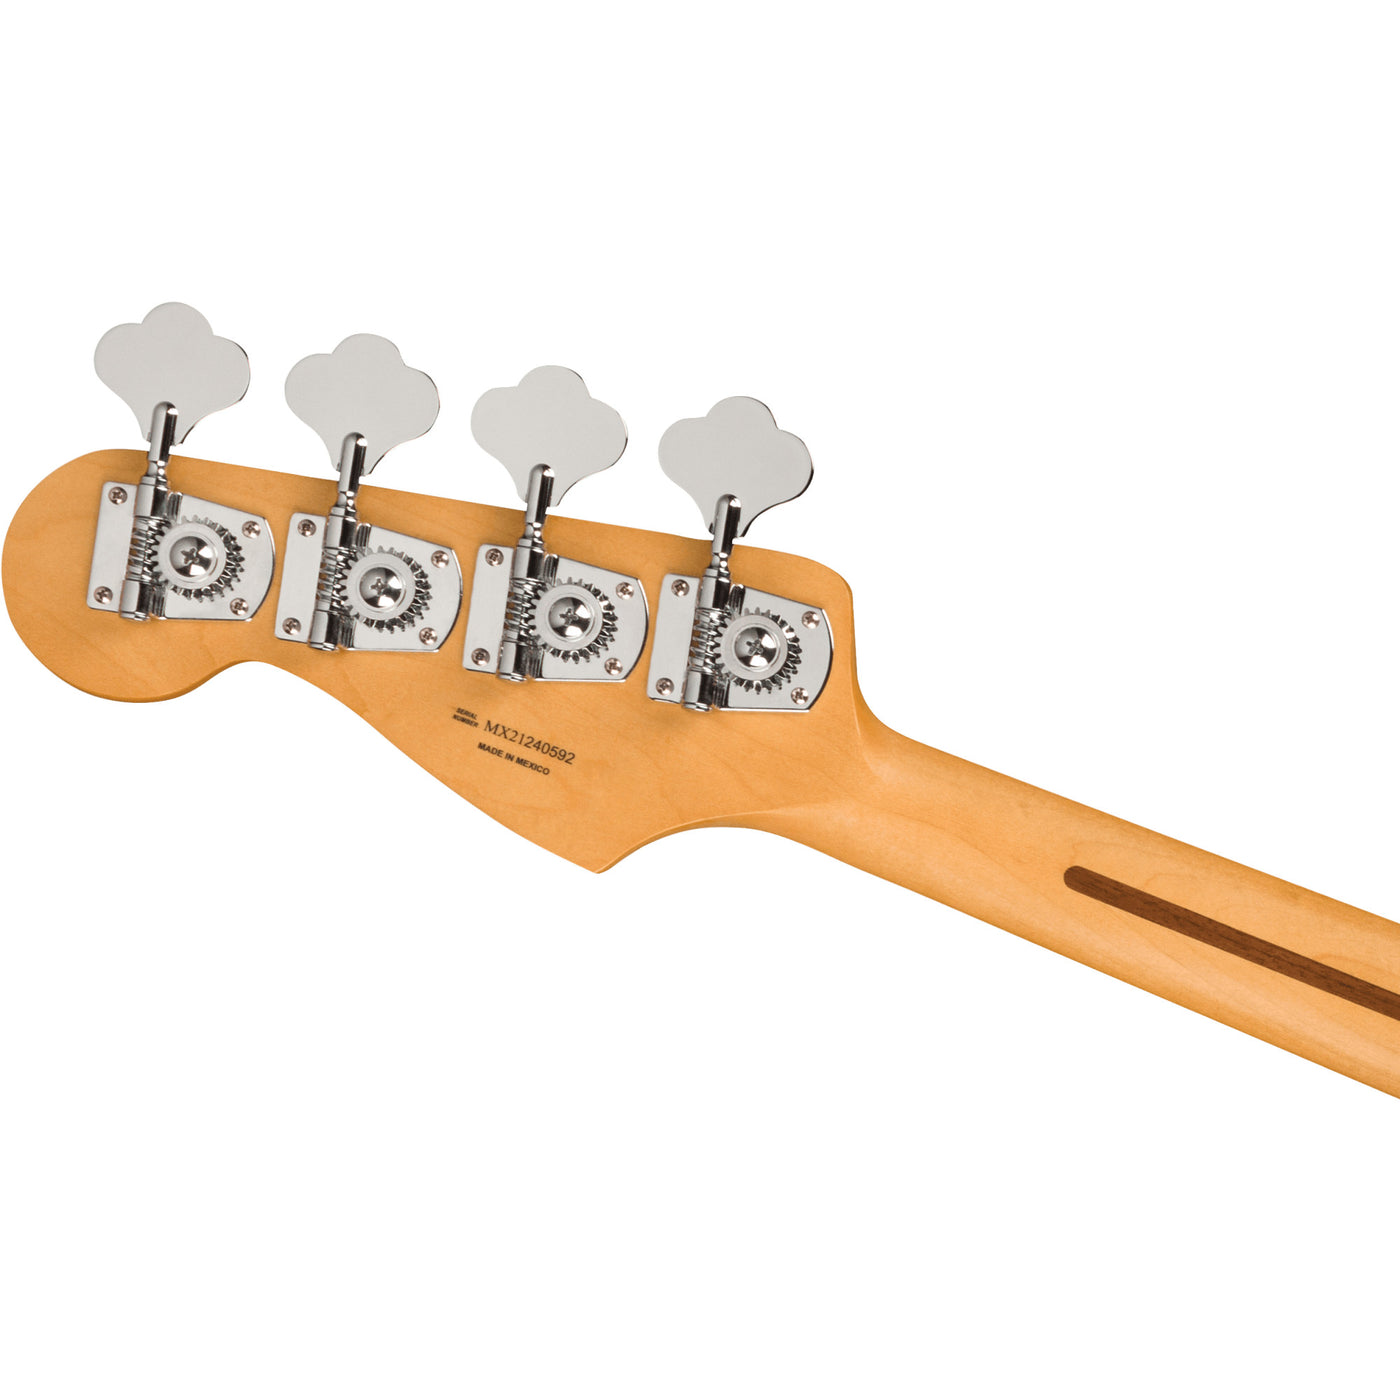 Fender Player Plus Active Meteora Bass, 3-Color Sunburst (0147392300)